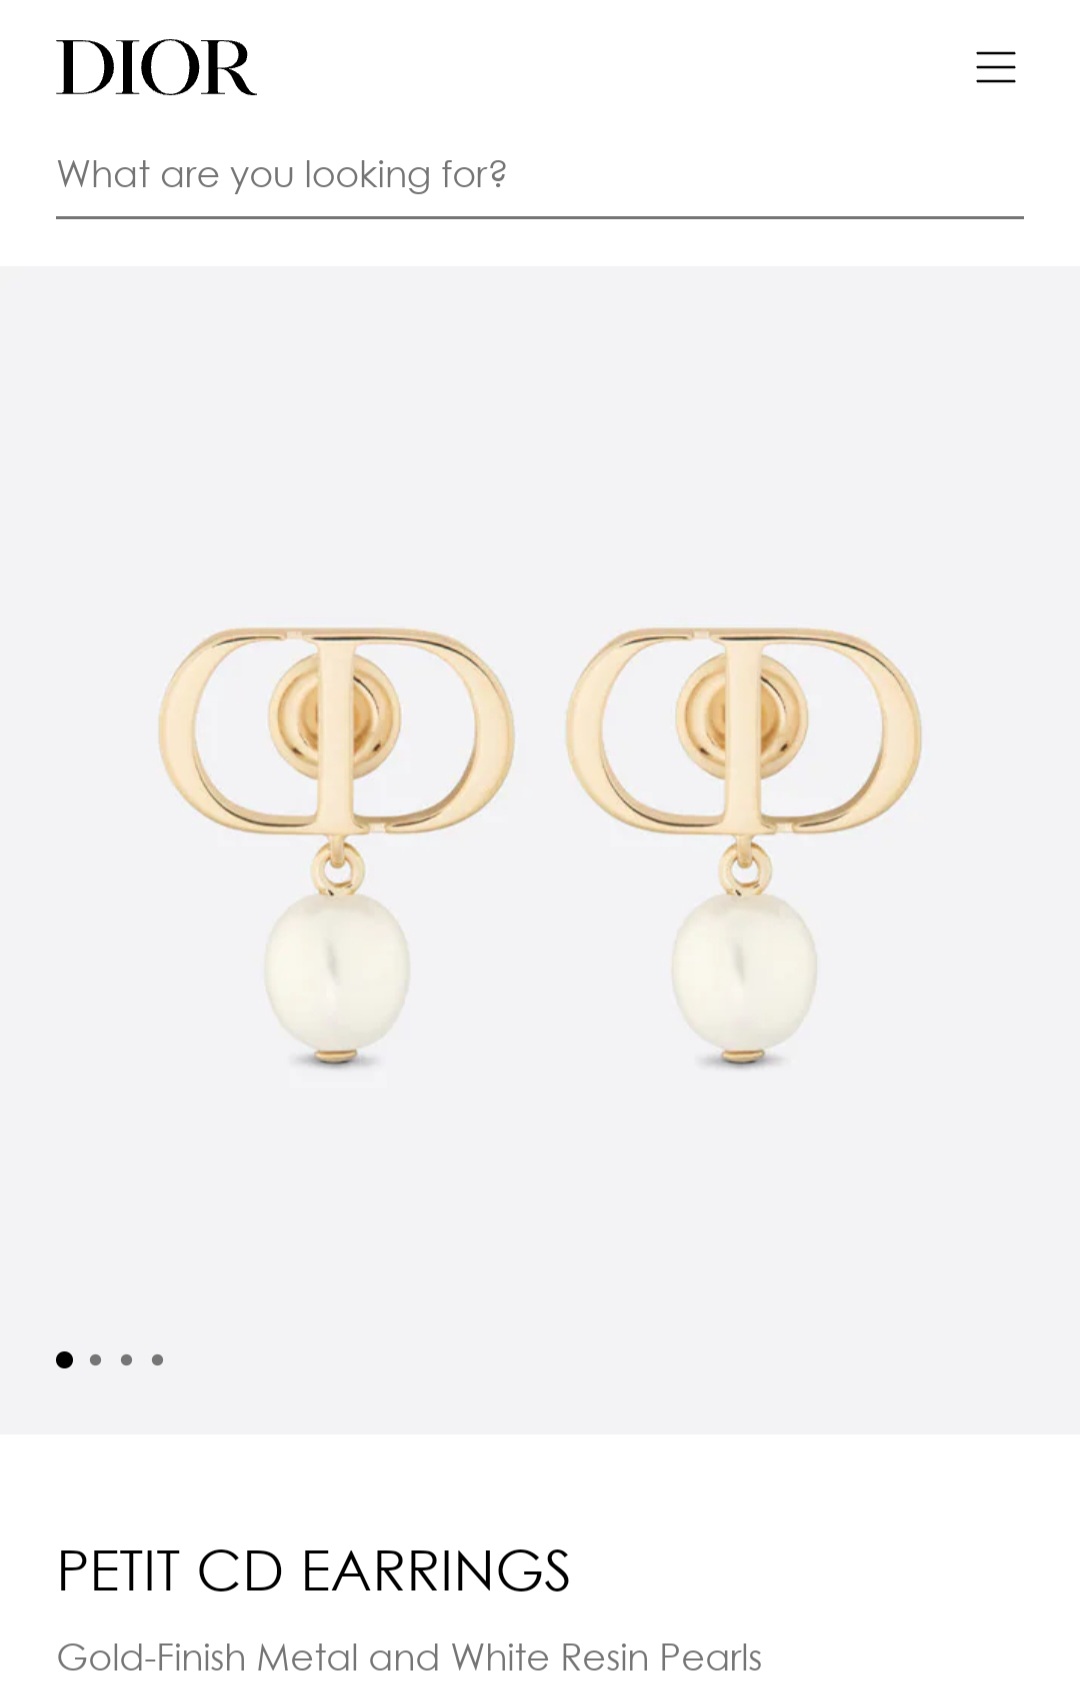 Dior PETIT CD earrings